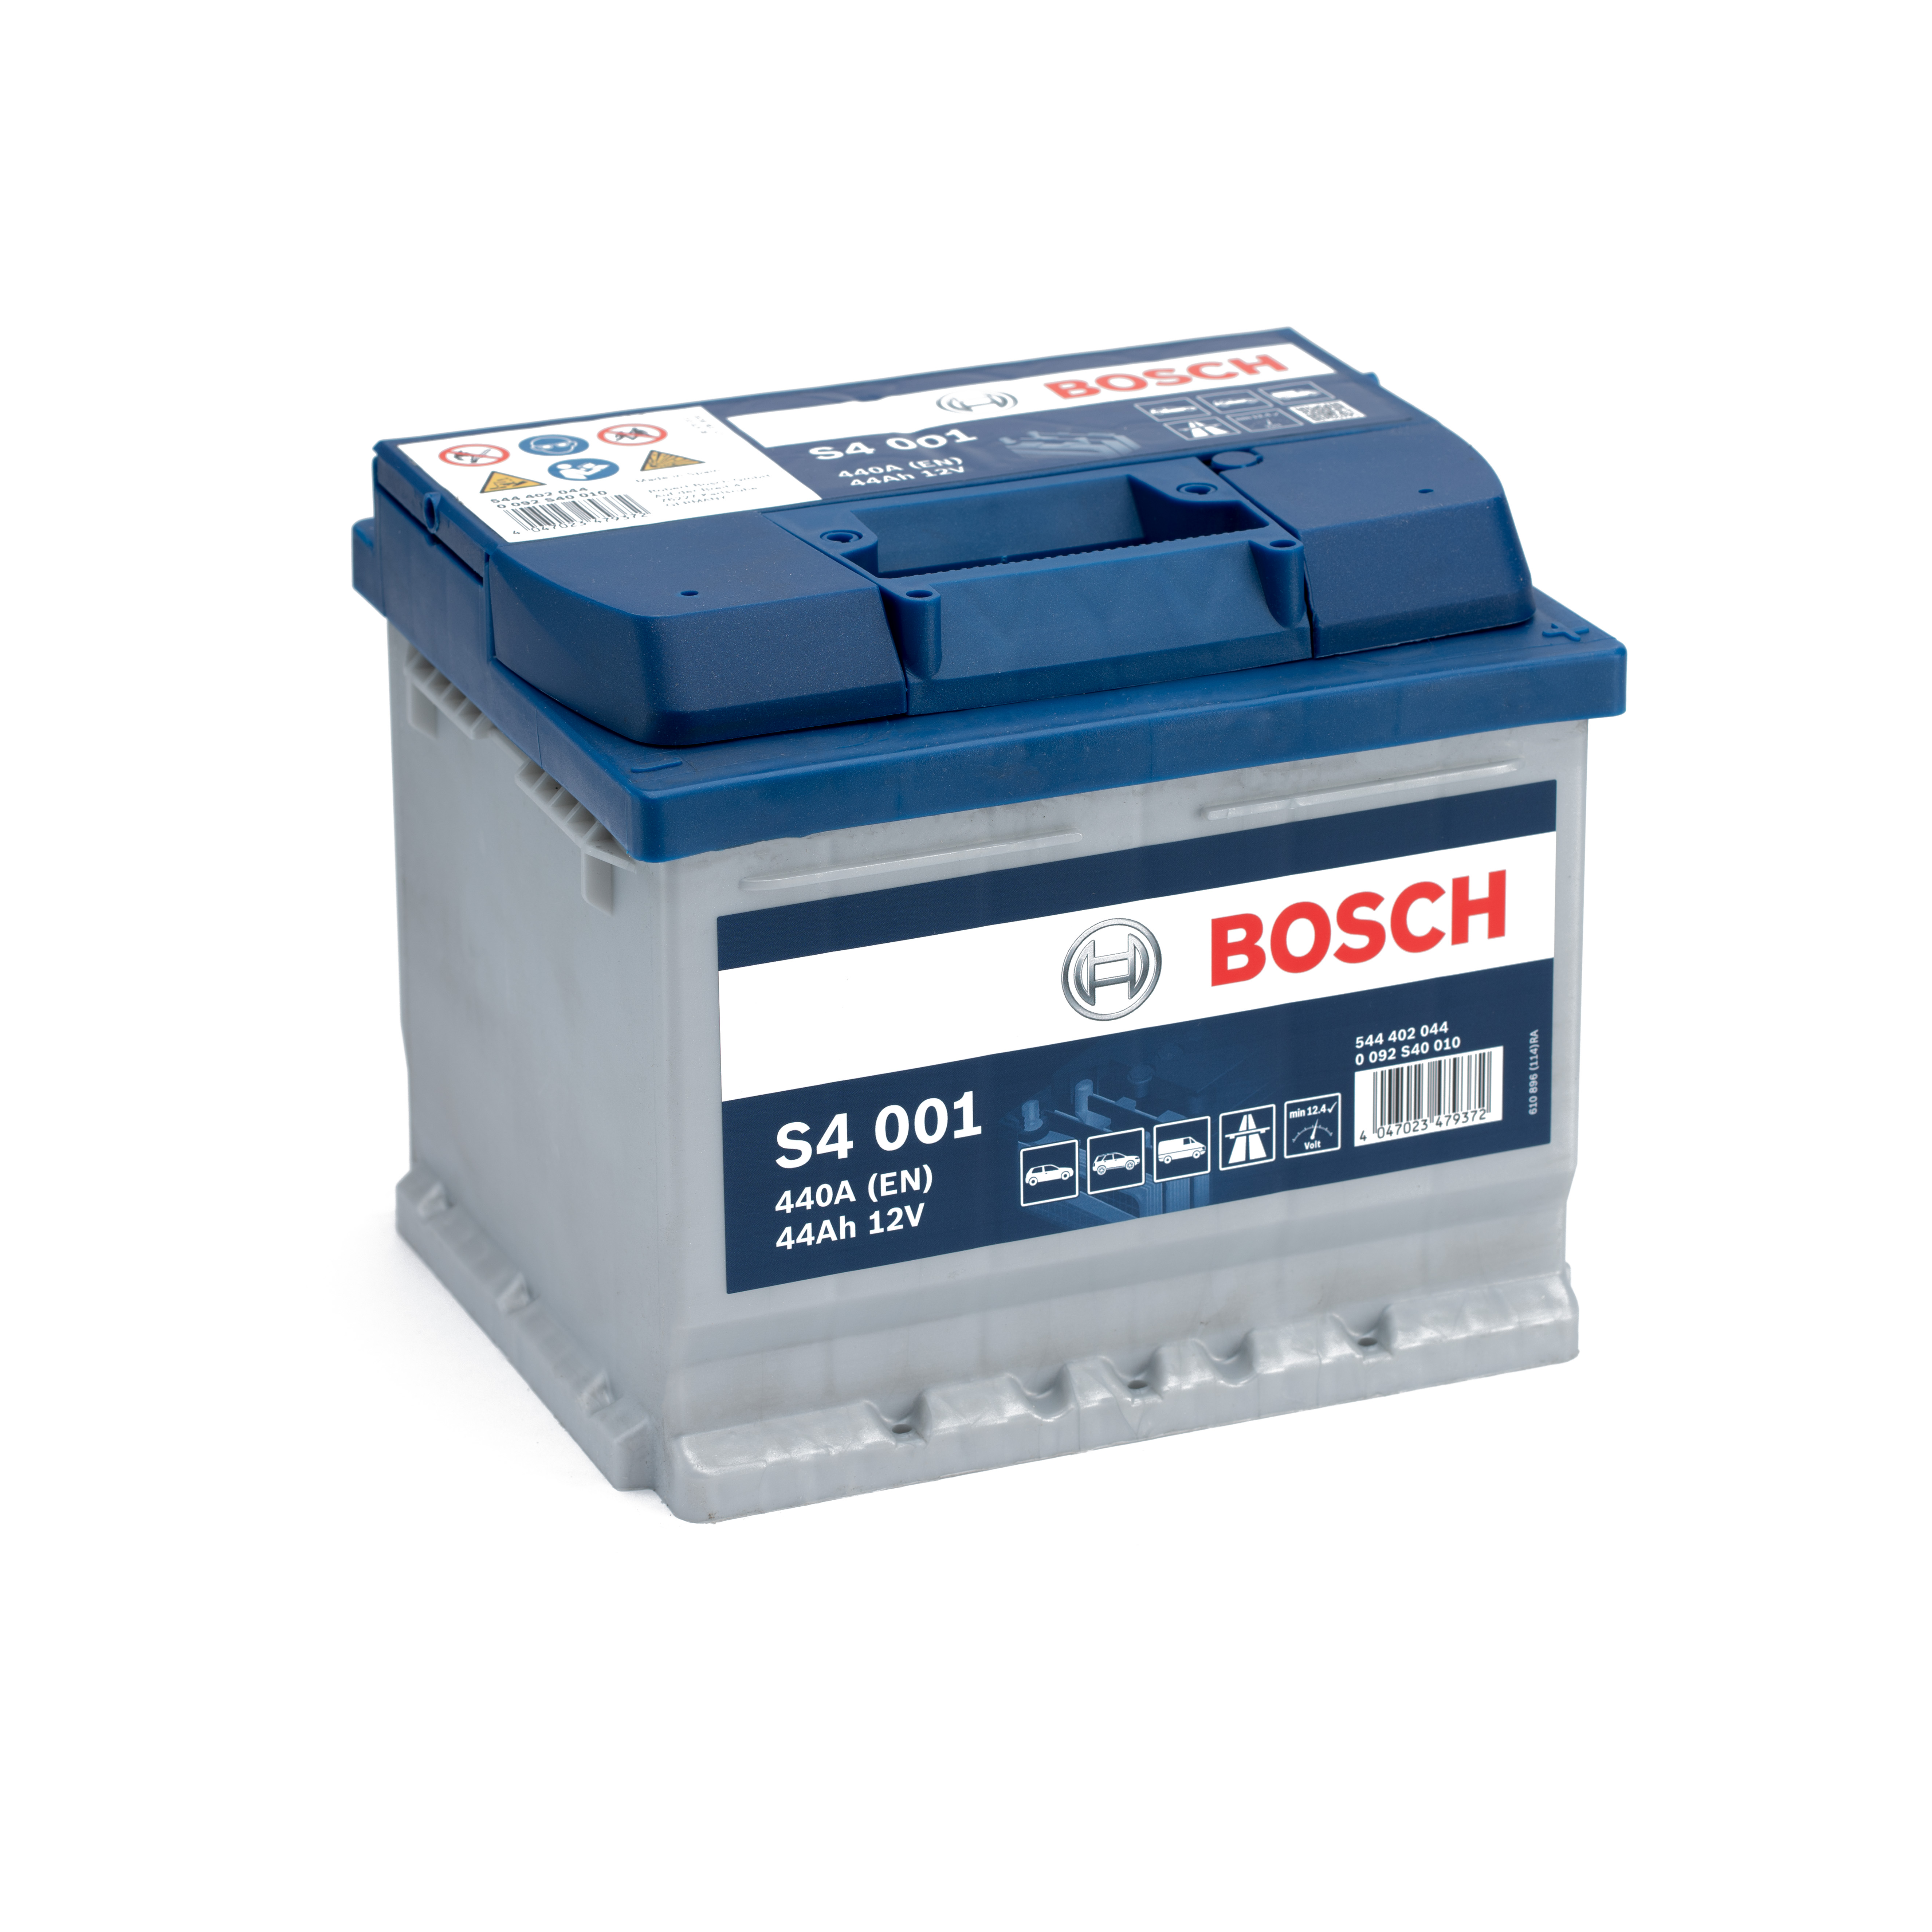 https://swissbatt24.ch/media/image/4f/64/46/Bosch-S4-001-44Ah-Autobatterie-544402044.jpg